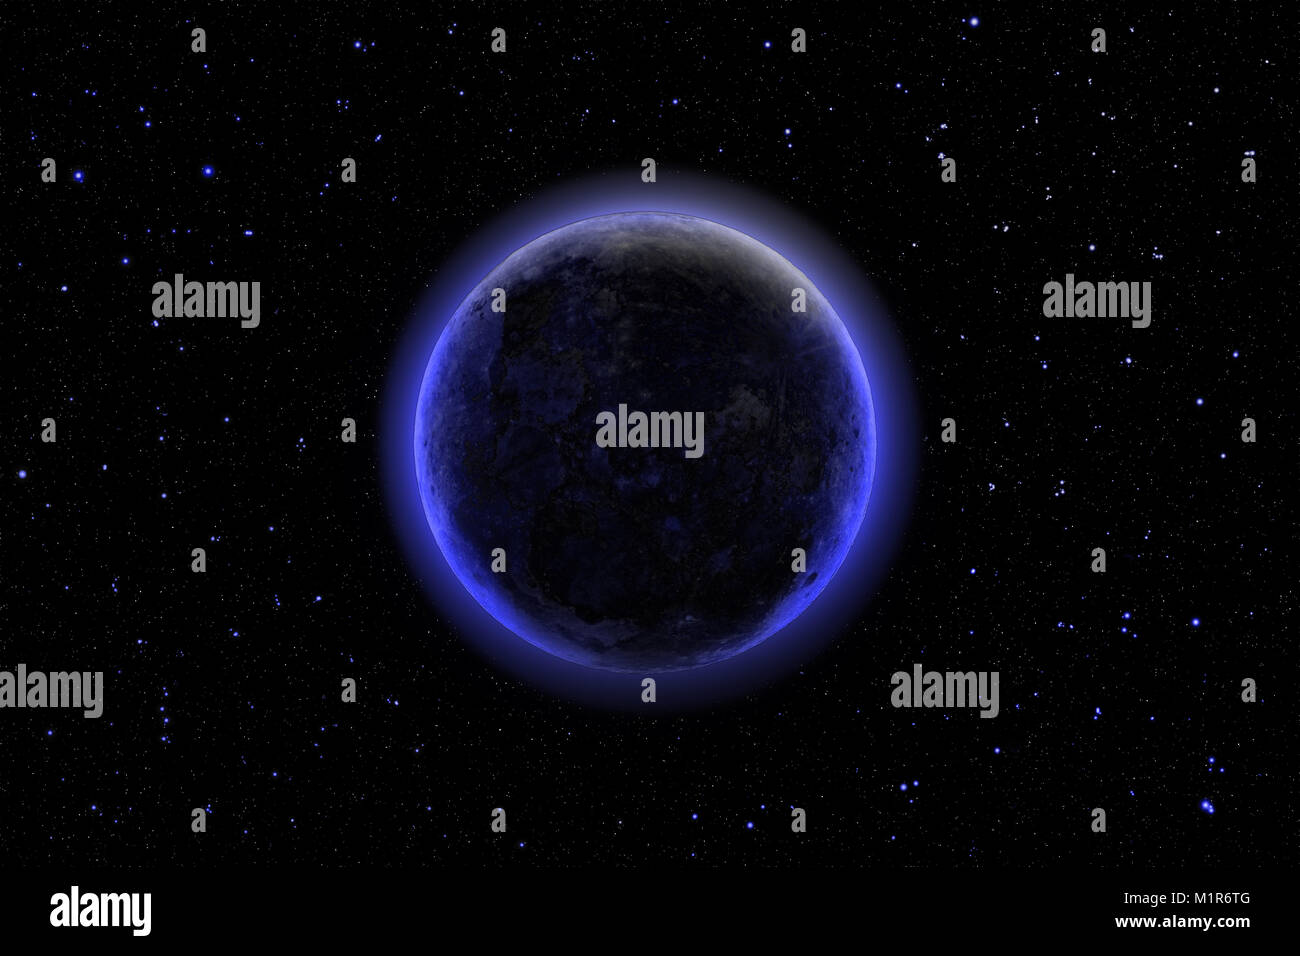 Spazio profondo imaginery, distante buio misterioso pianeta brilla contro il cielo stellato Foto Stock